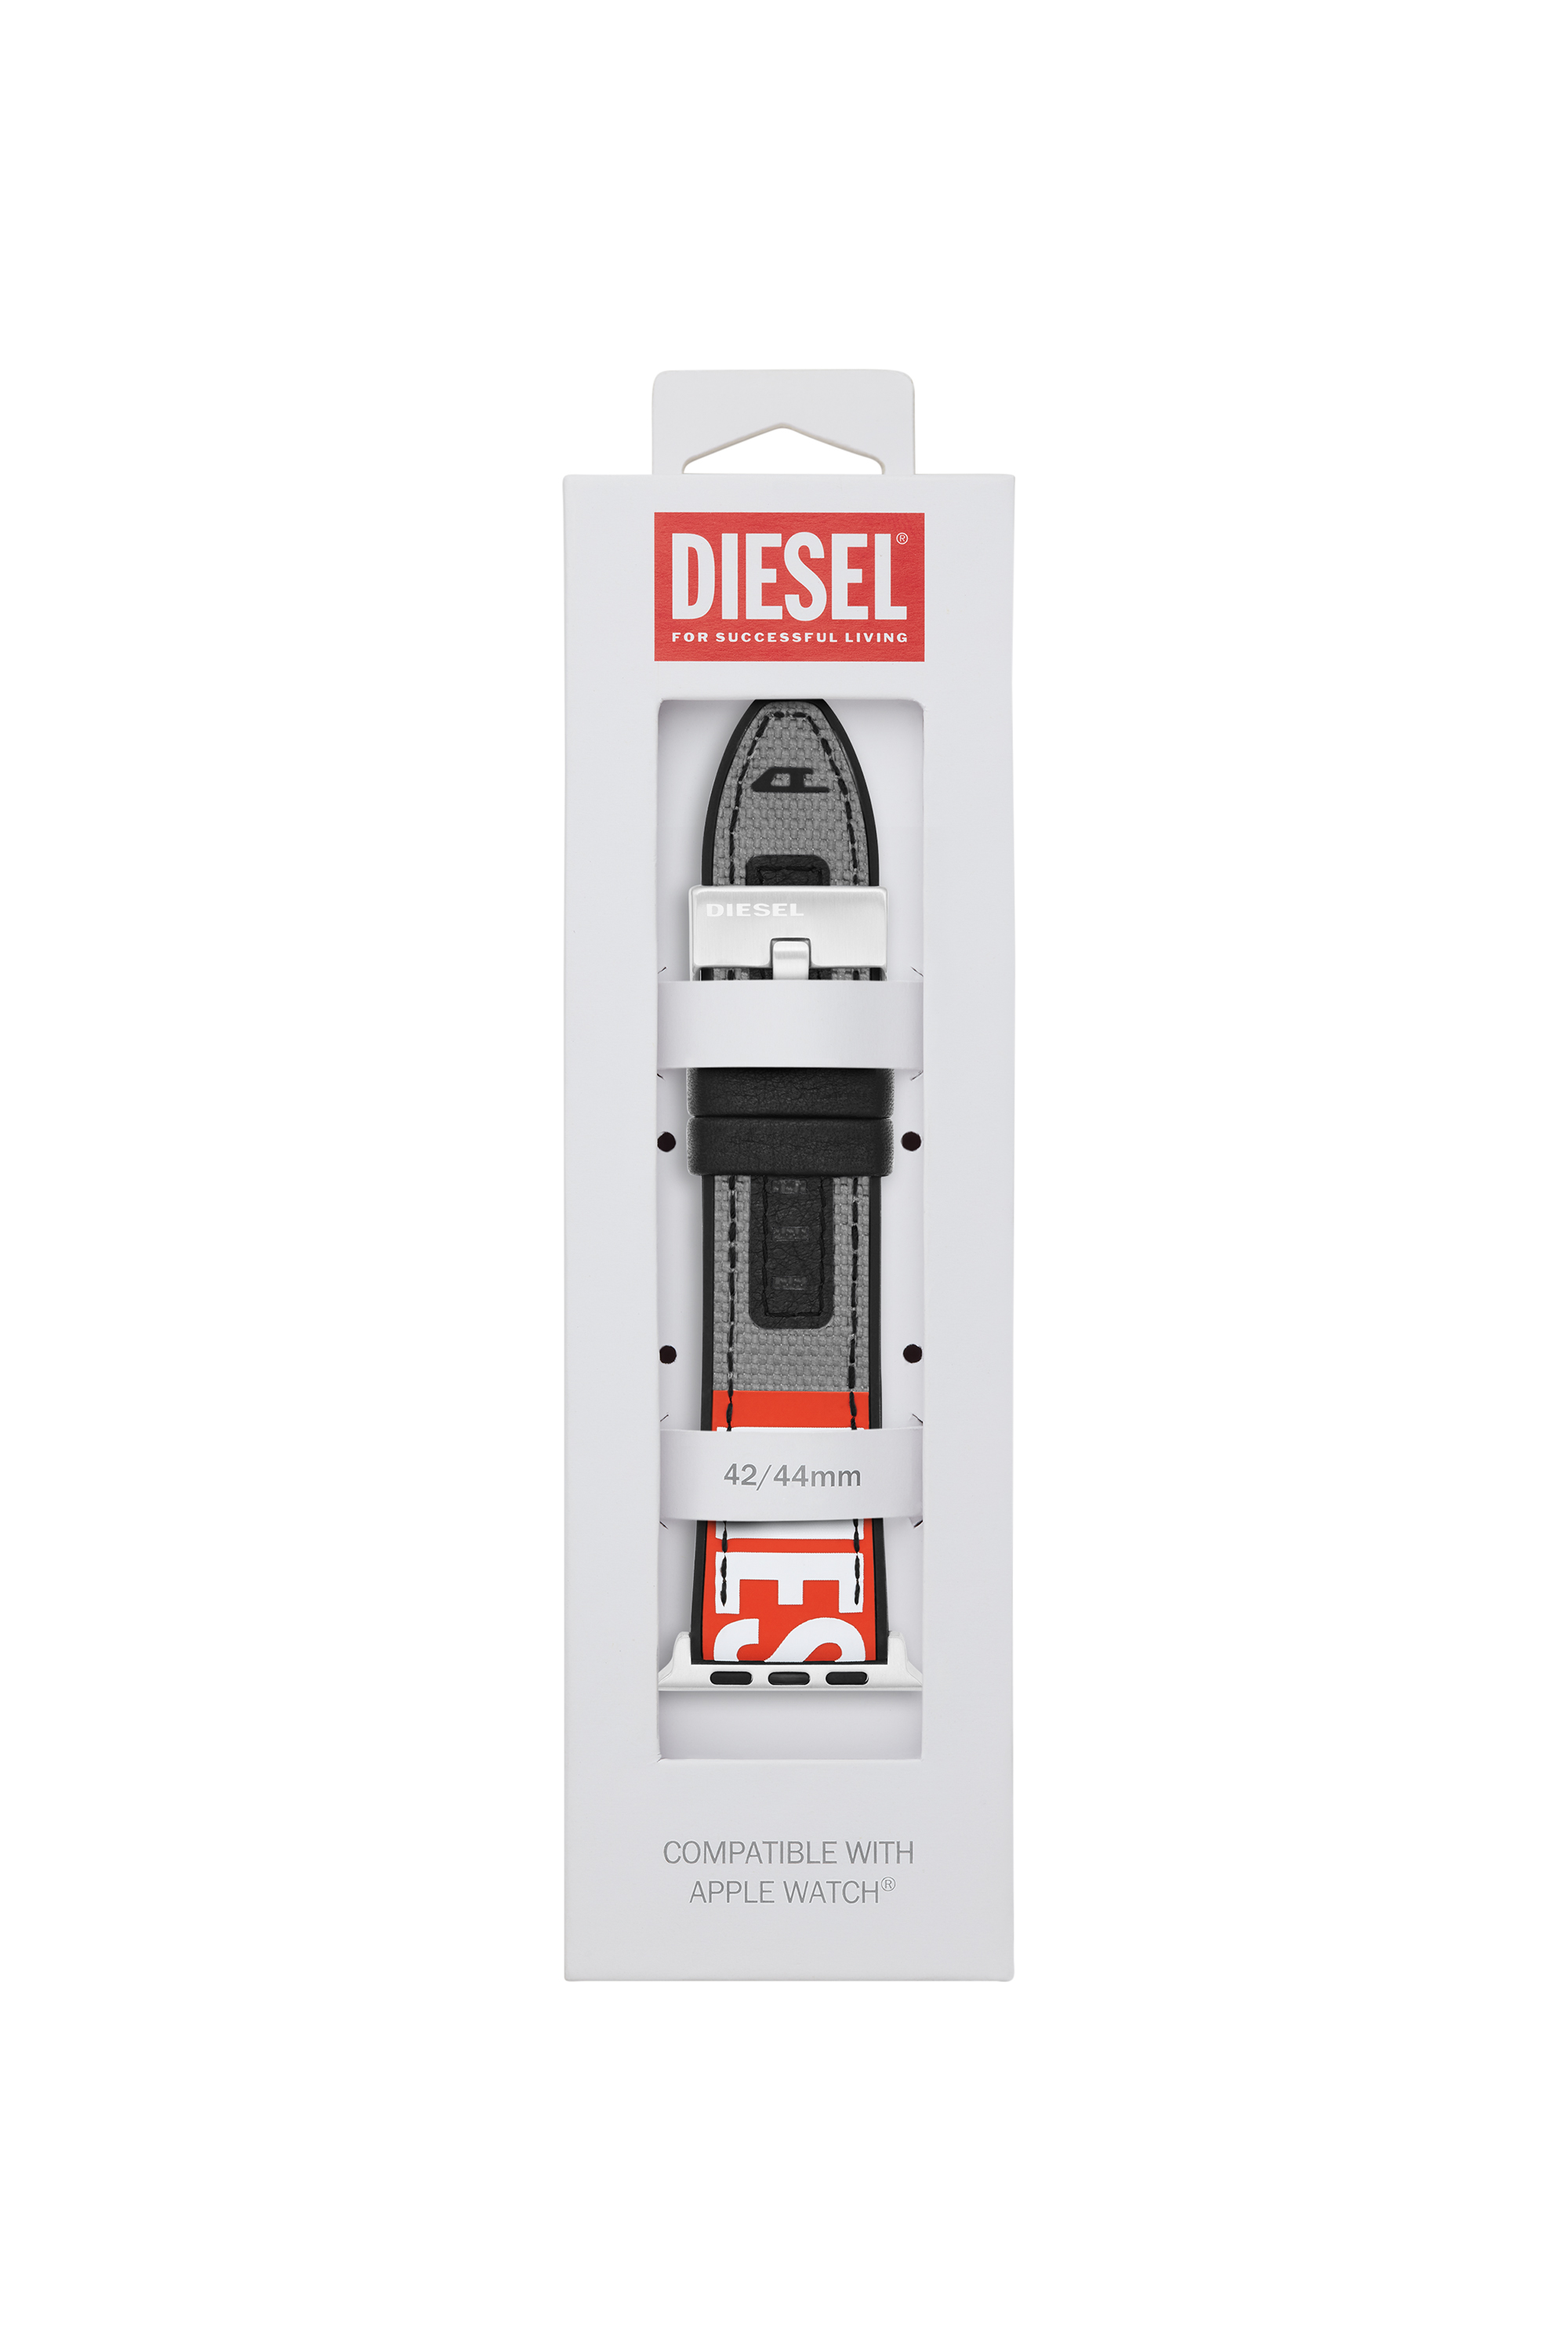 Diesel - DSS006, グレー - Image 2